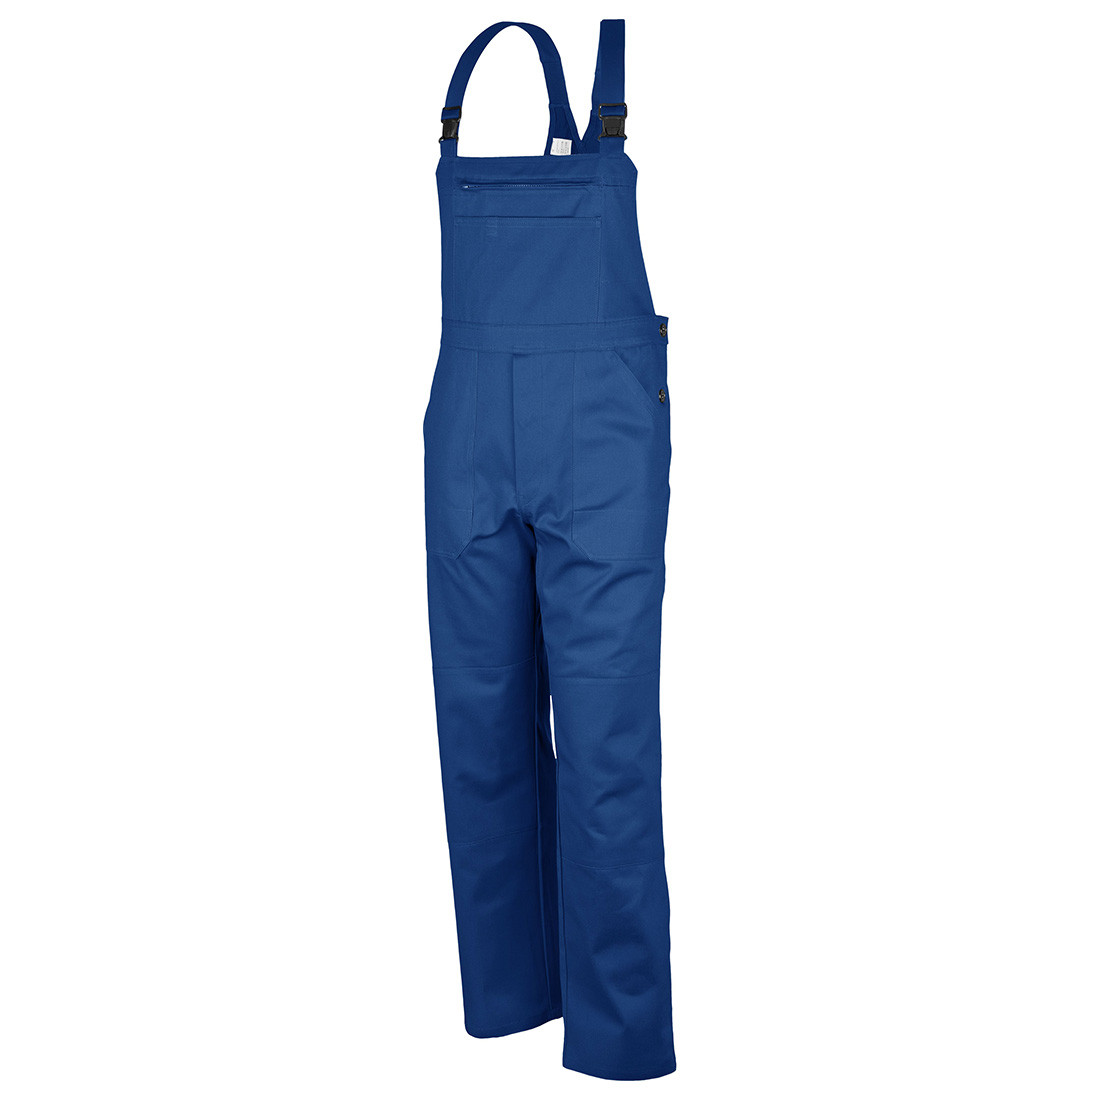 Pantalone pettorina - Abbigliamento di protezione